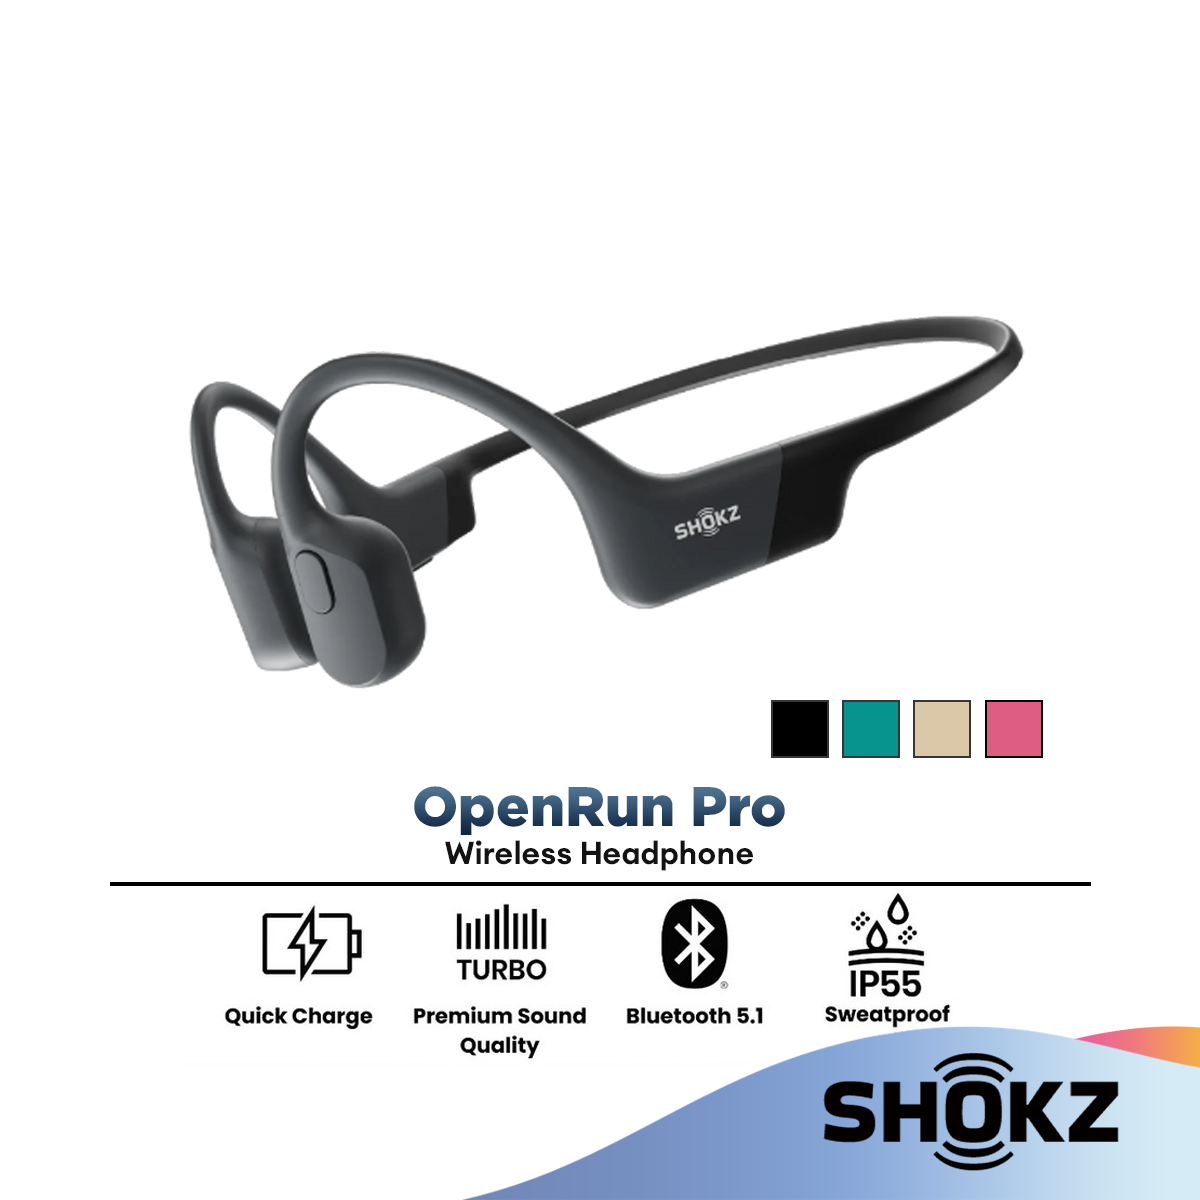 Shokz OpenRun Pro (S810)